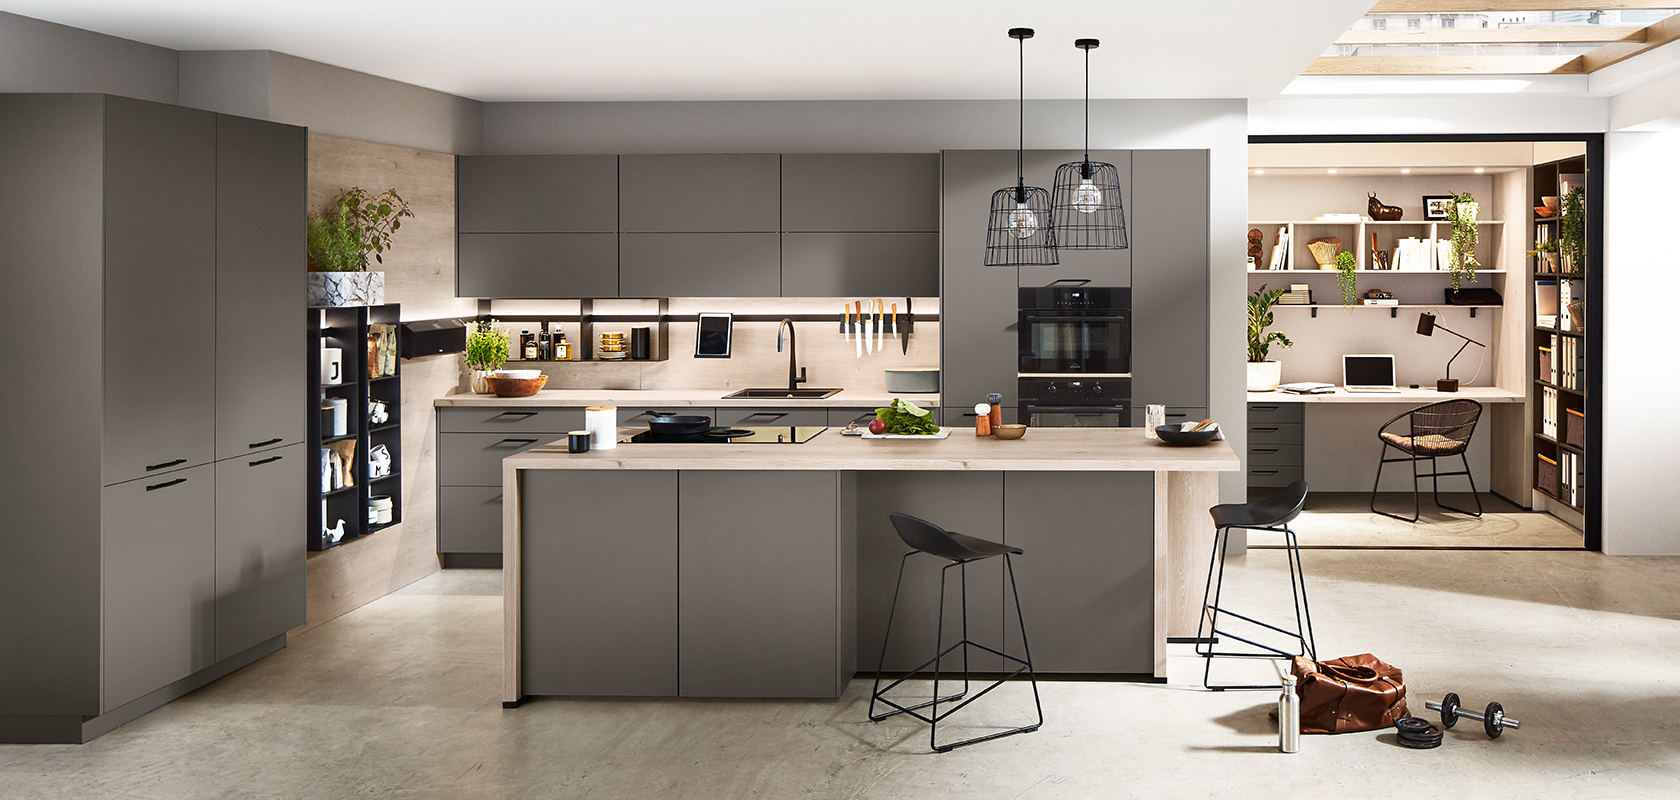 Diseño de cocina moderna con gabinetes grises elegantes, electrodomésticos integrados y una isla con taburetes, que se extiende sin problemas a un acogedor rincón de oficina en casa.